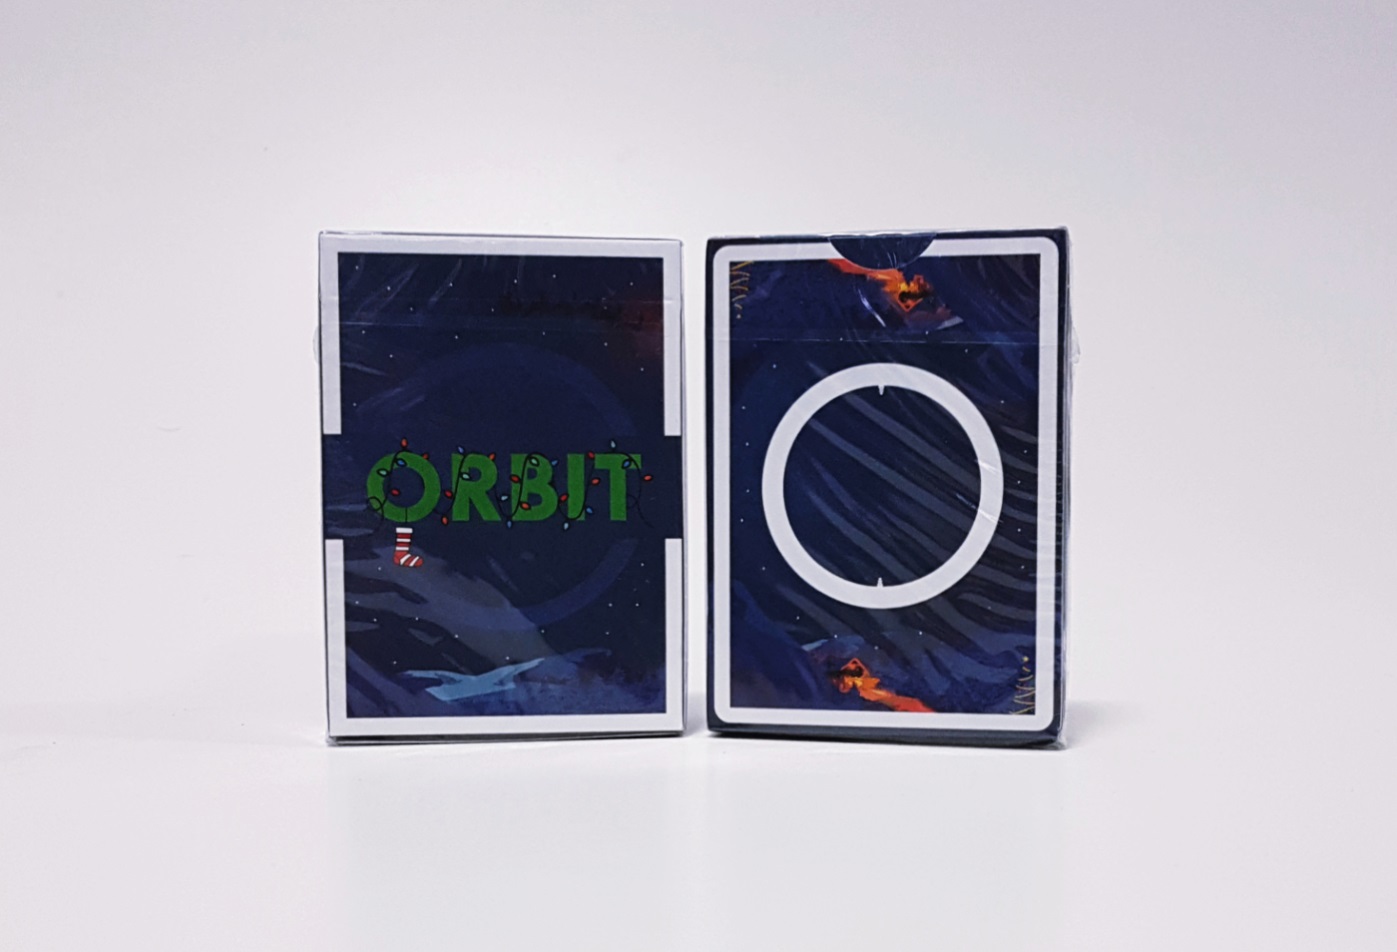 [Orbit] 오빗 크리스마스 에디션